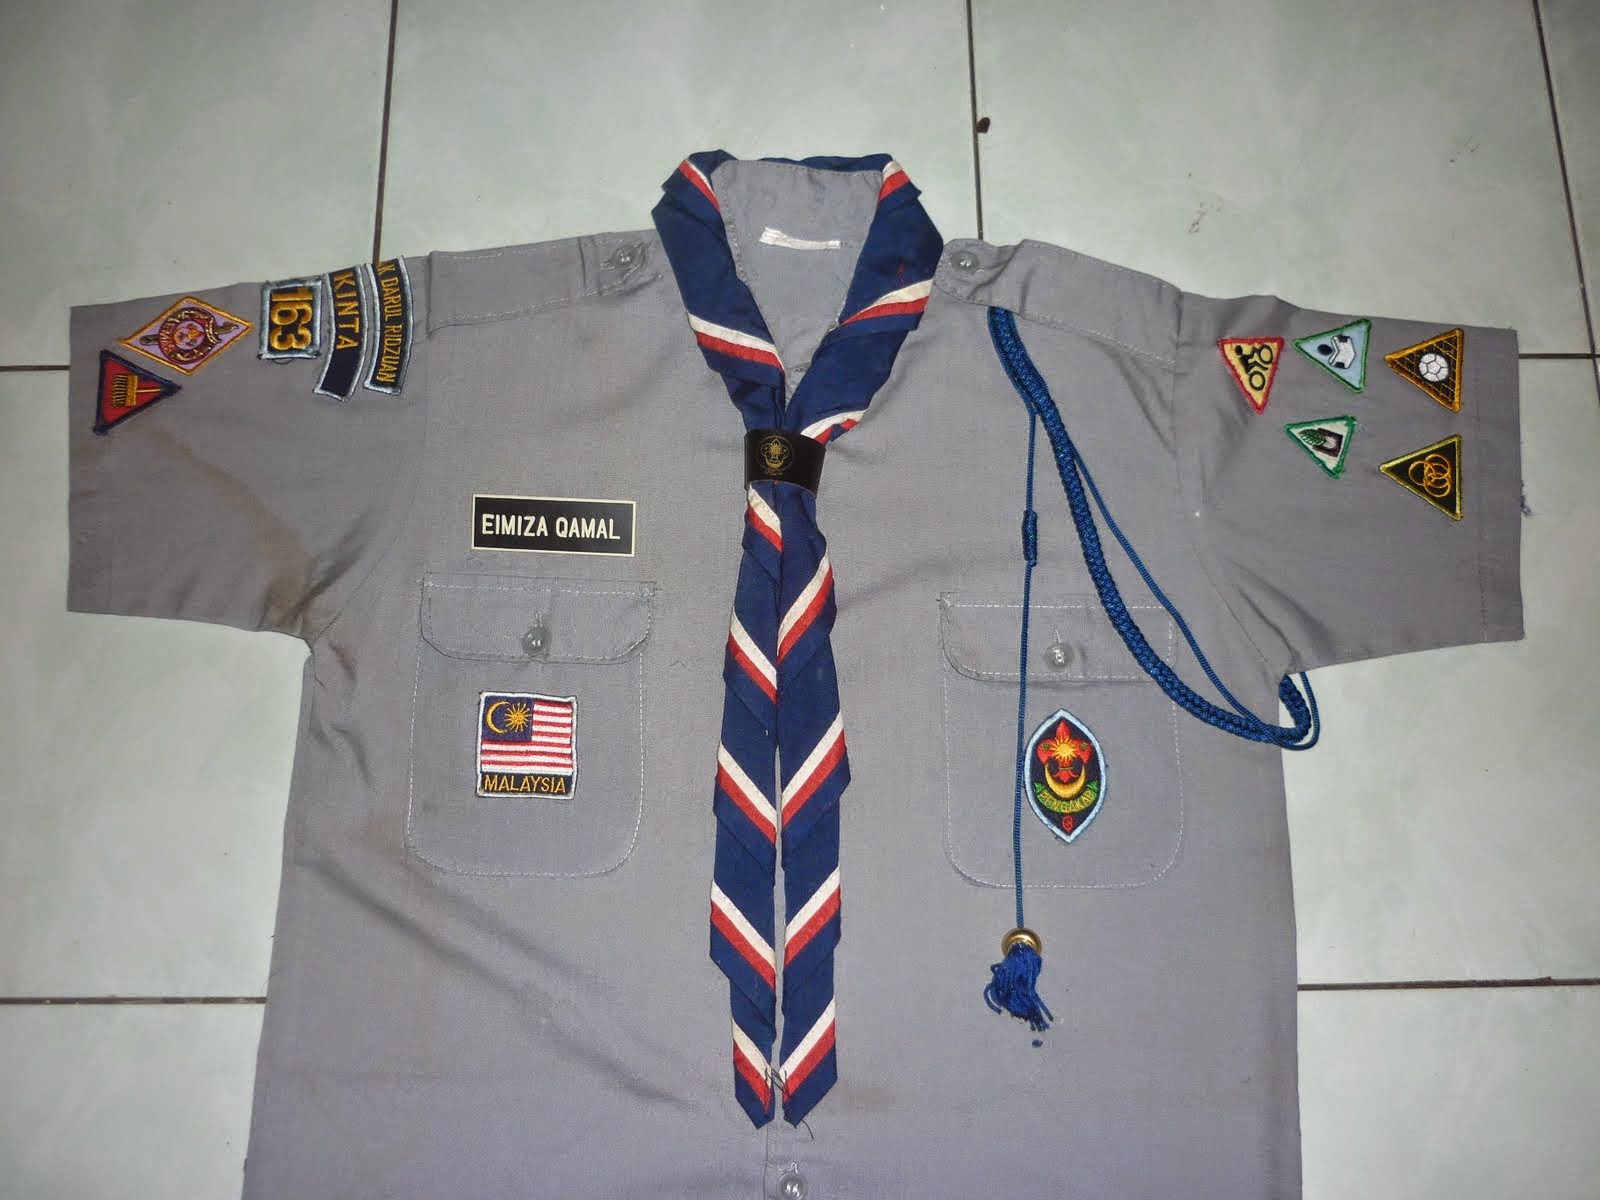 CARA PEMAKAIAN SERAGAM PENGAKAP - Dx Uniform